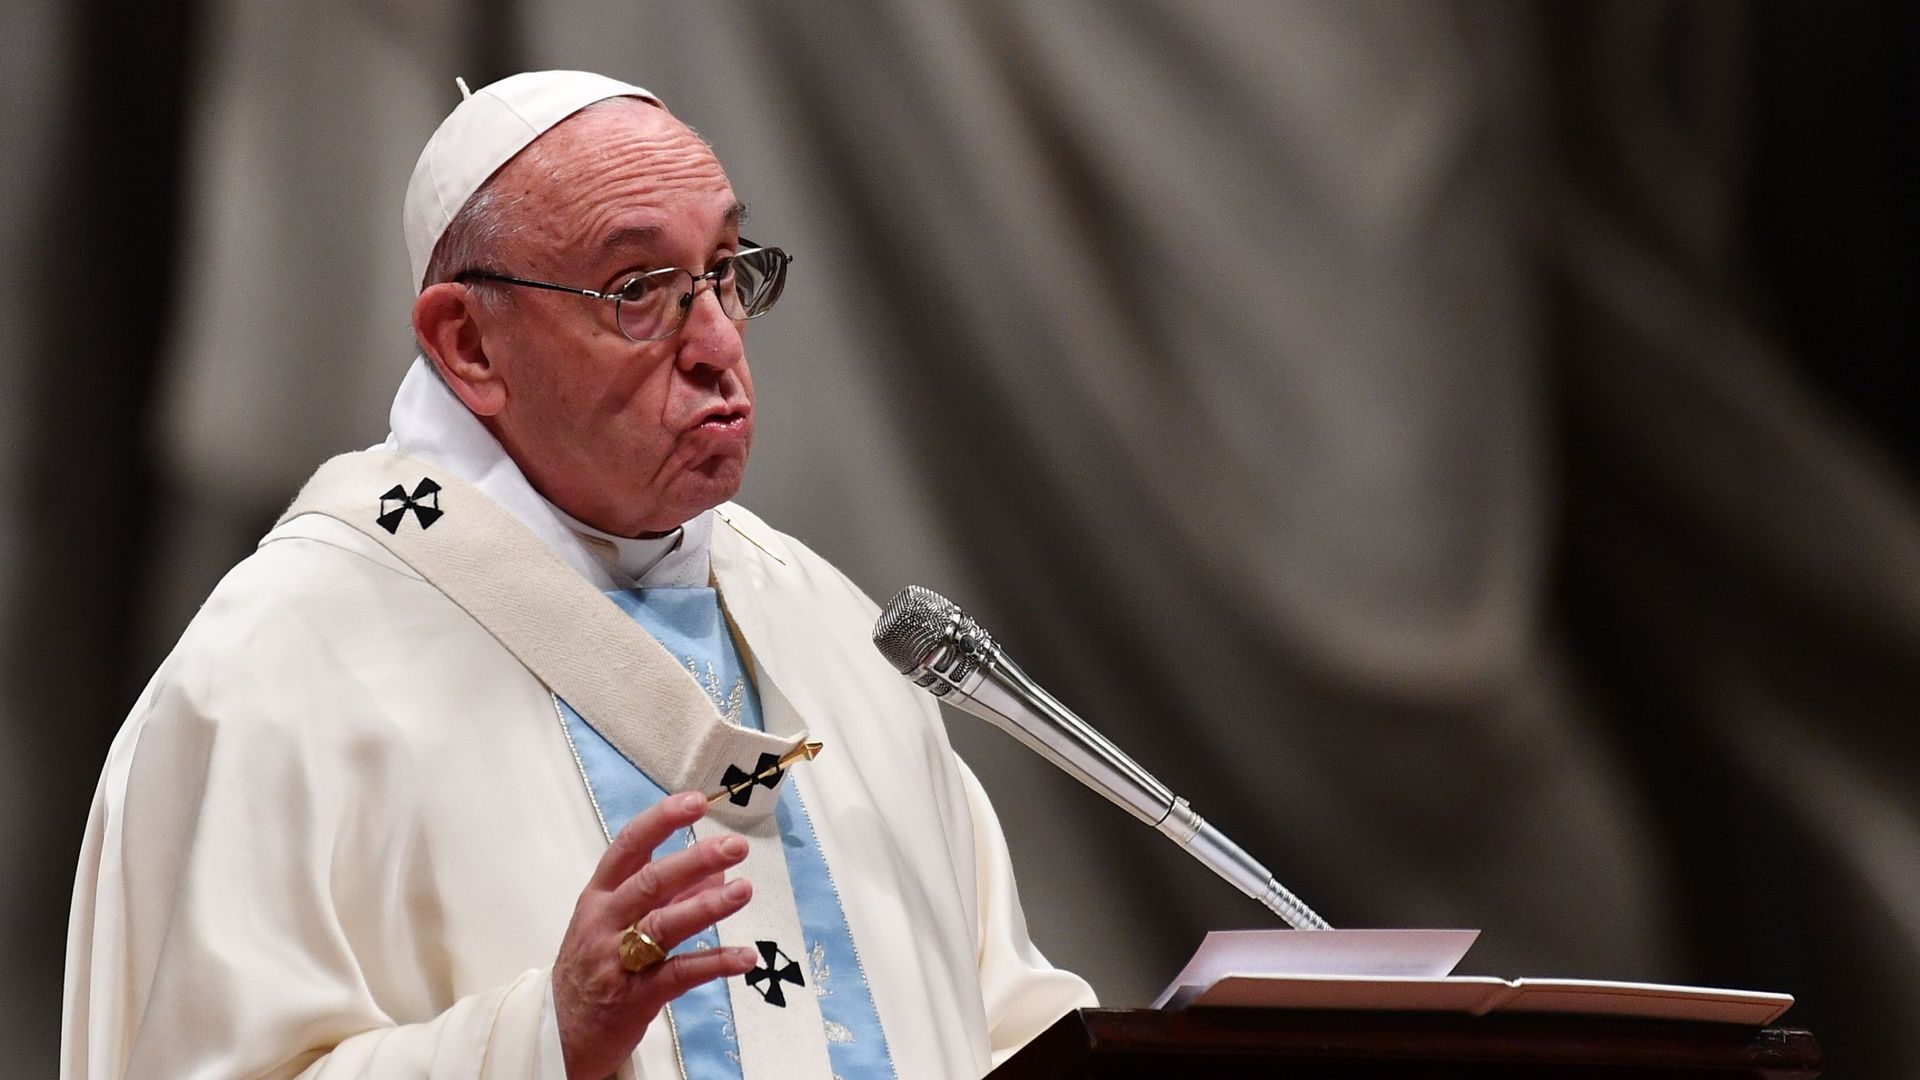 Le pape François a invité lundi les fidèles catholiques à prier pour un avenir de paix en 2018